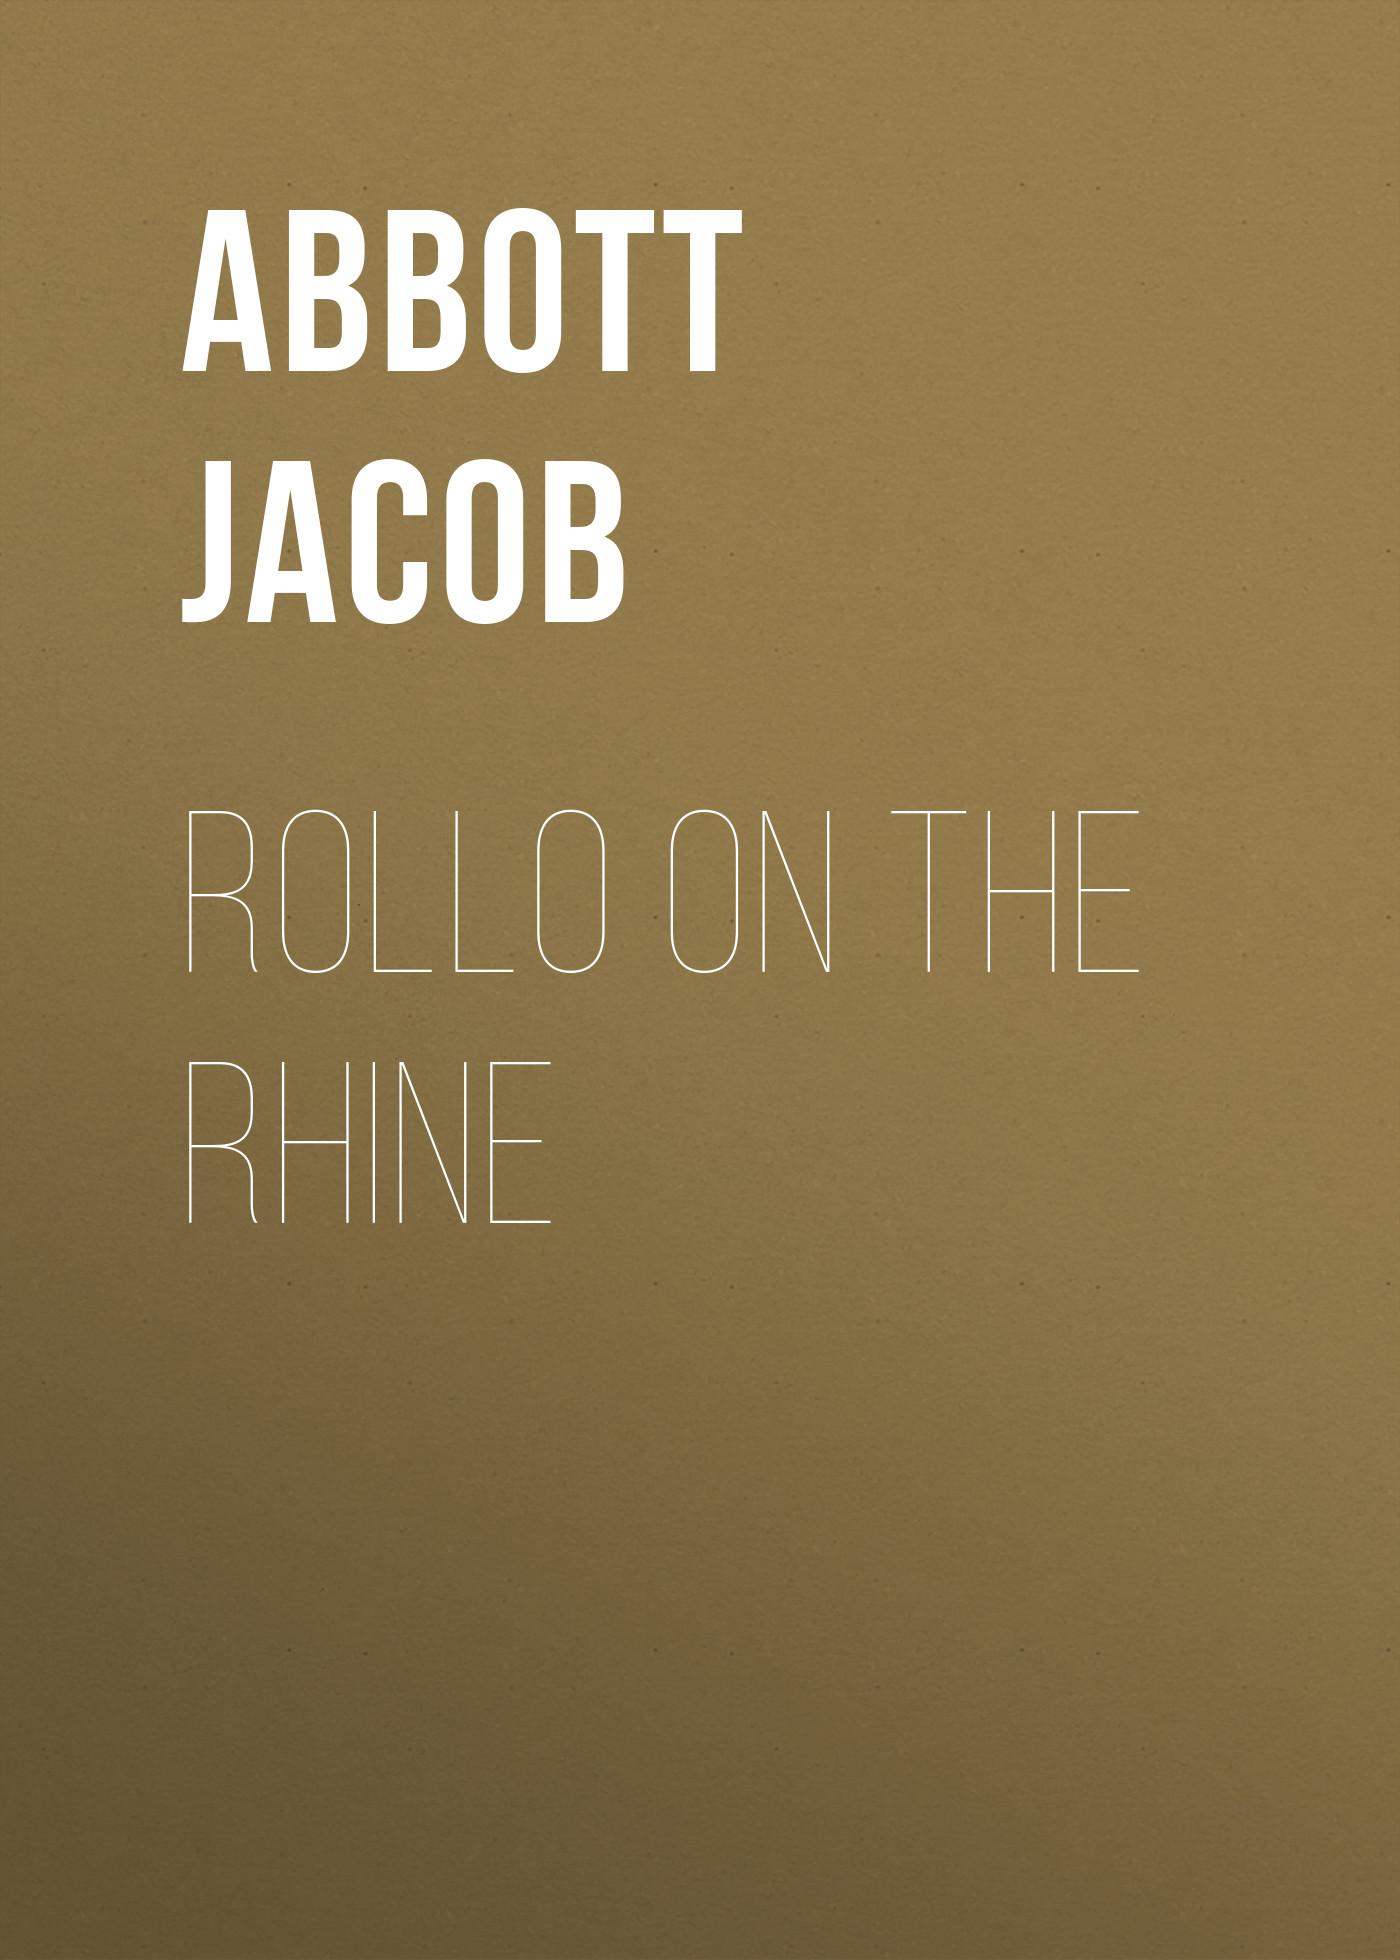 Книга Rollo on the Rhine из серии , созданная Jacob Abbott, может относится к жанру Зарубежные детские книги, Литература 19 века, Зарубежная старинная литература, Зарубежная классика. Стоимость электронной книги Rollo on the Rhine с идентификатором 36364262 составляет 0 руб.